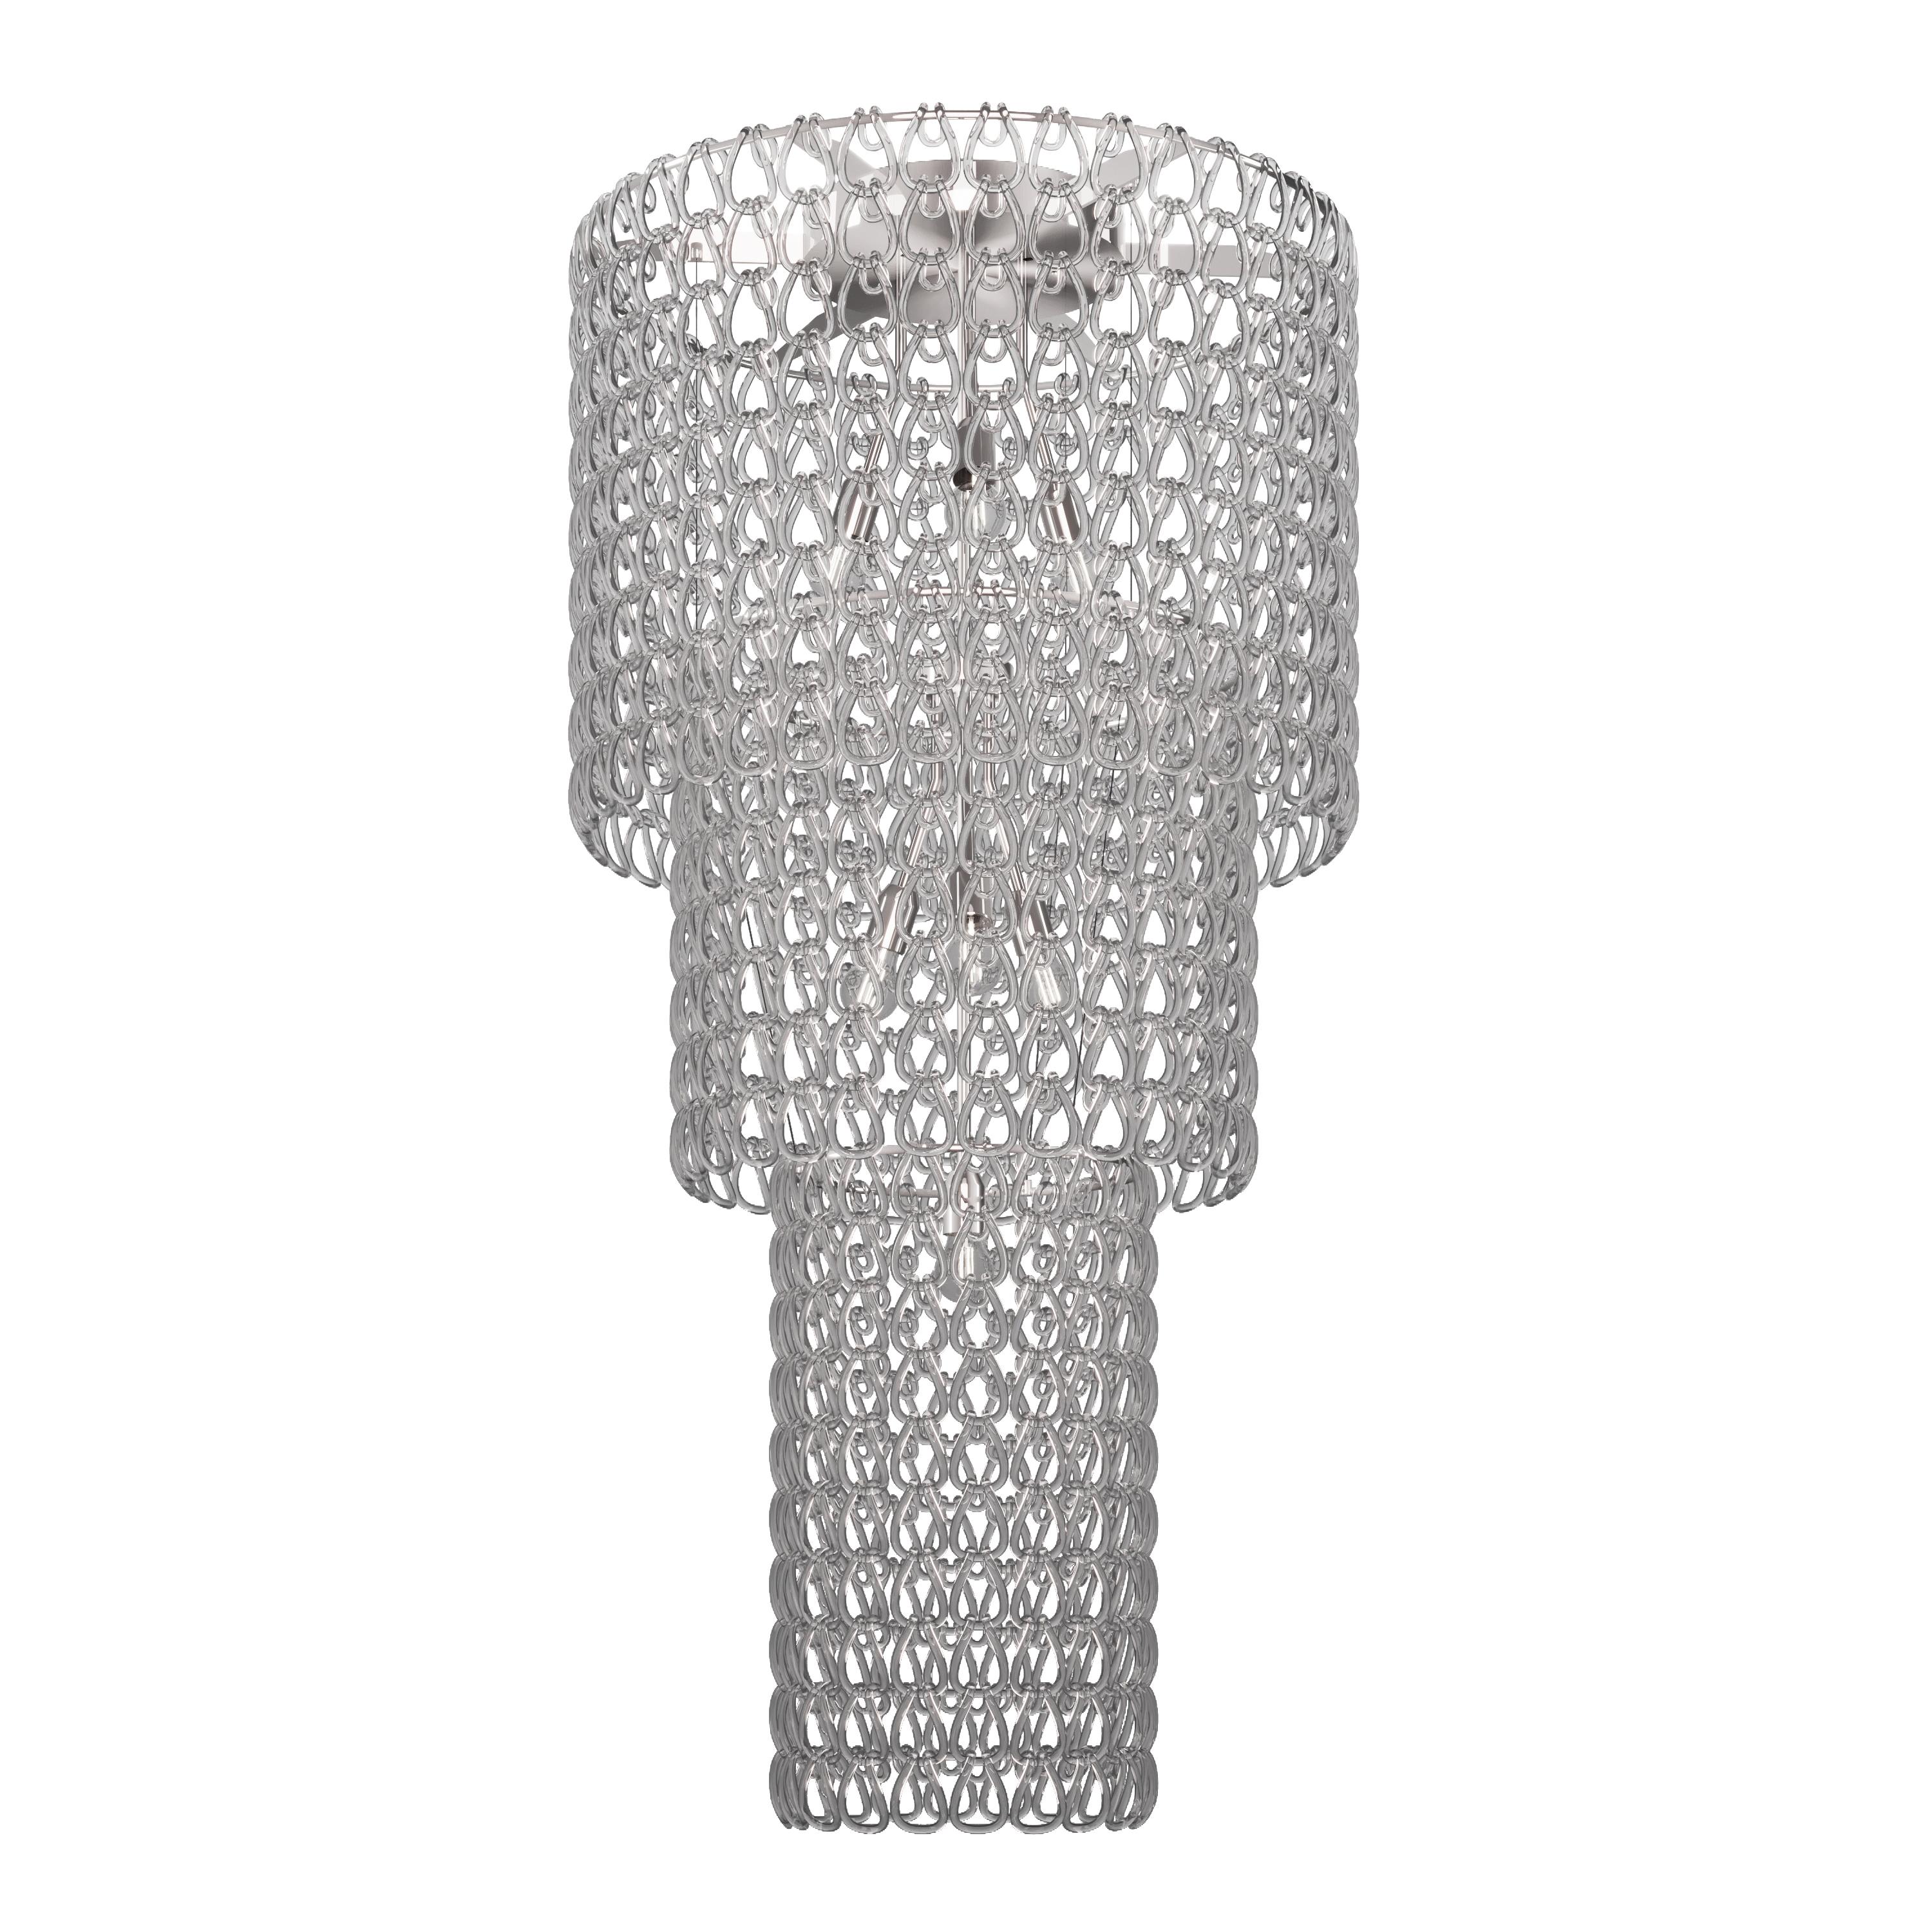 Vistosi Minigiogali Pendant Light in Crystal Transparent Glass In New Condition For Sale In Mogliano Veneto, Treviso